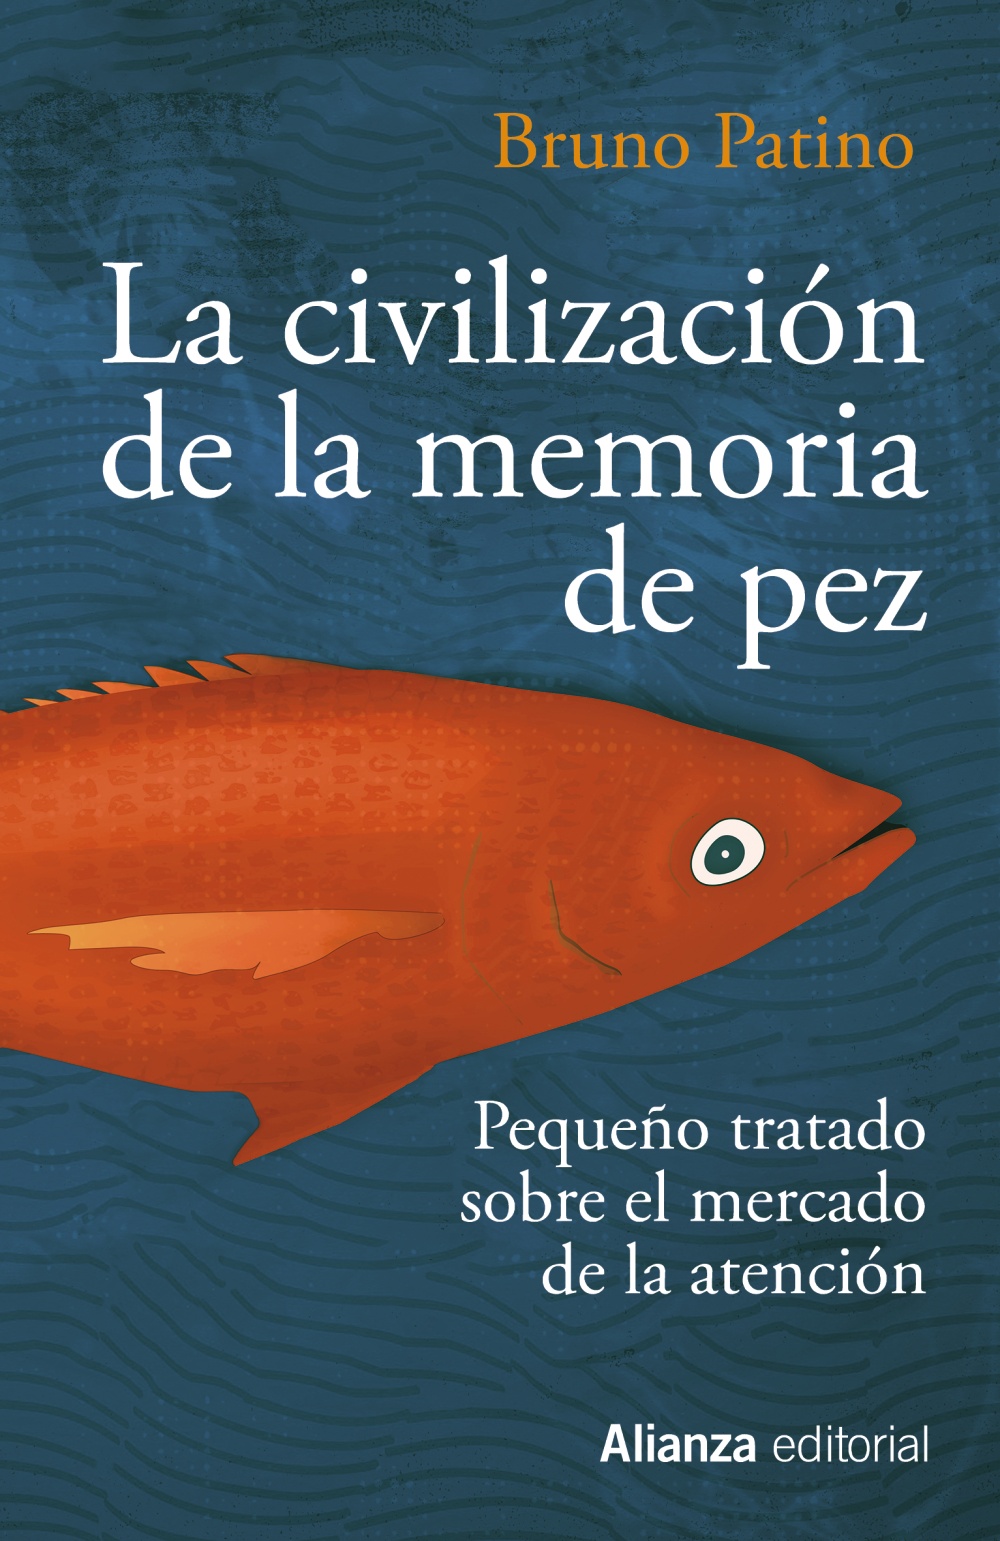 La civilización de la memoria de pez - Alianza Editorial